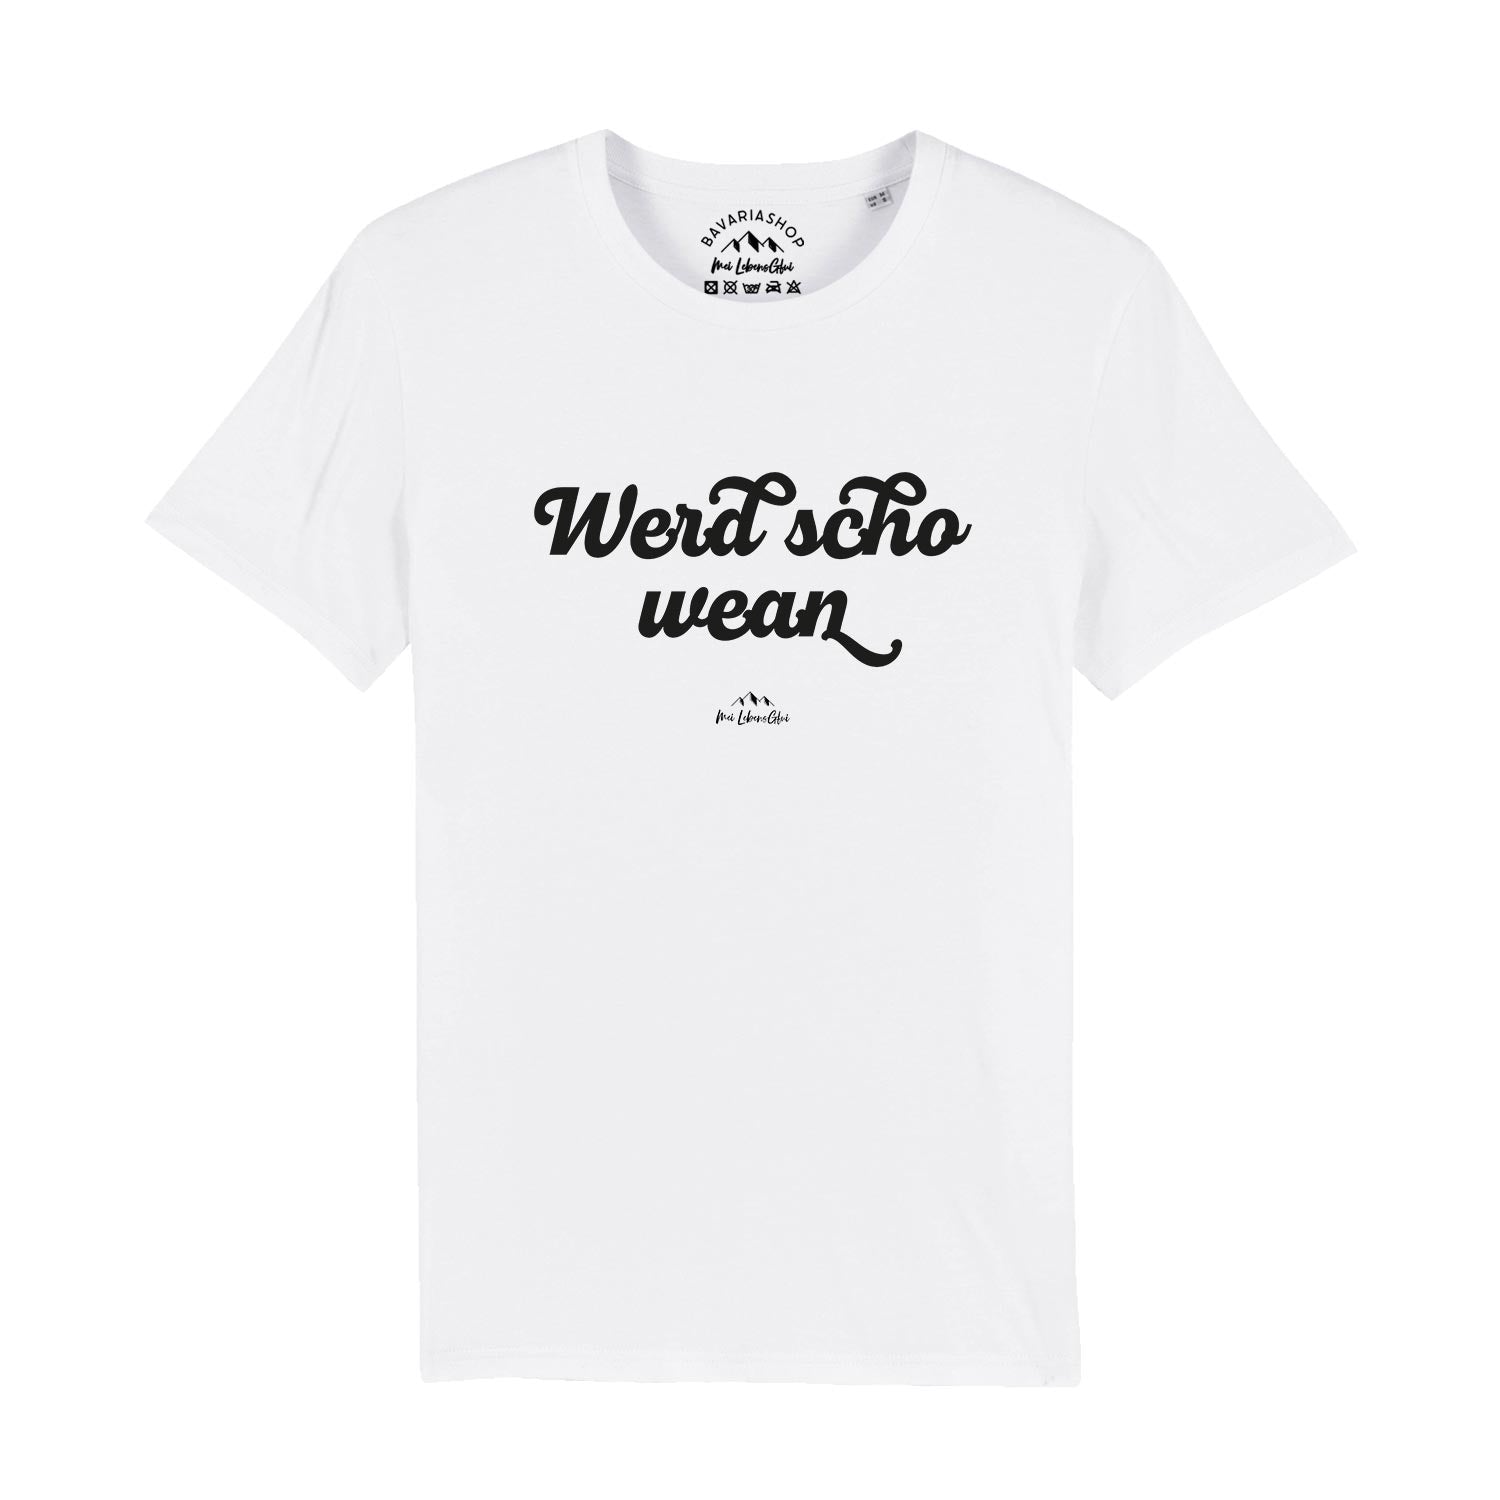 Herren T-Shirt "Wead scho wean"